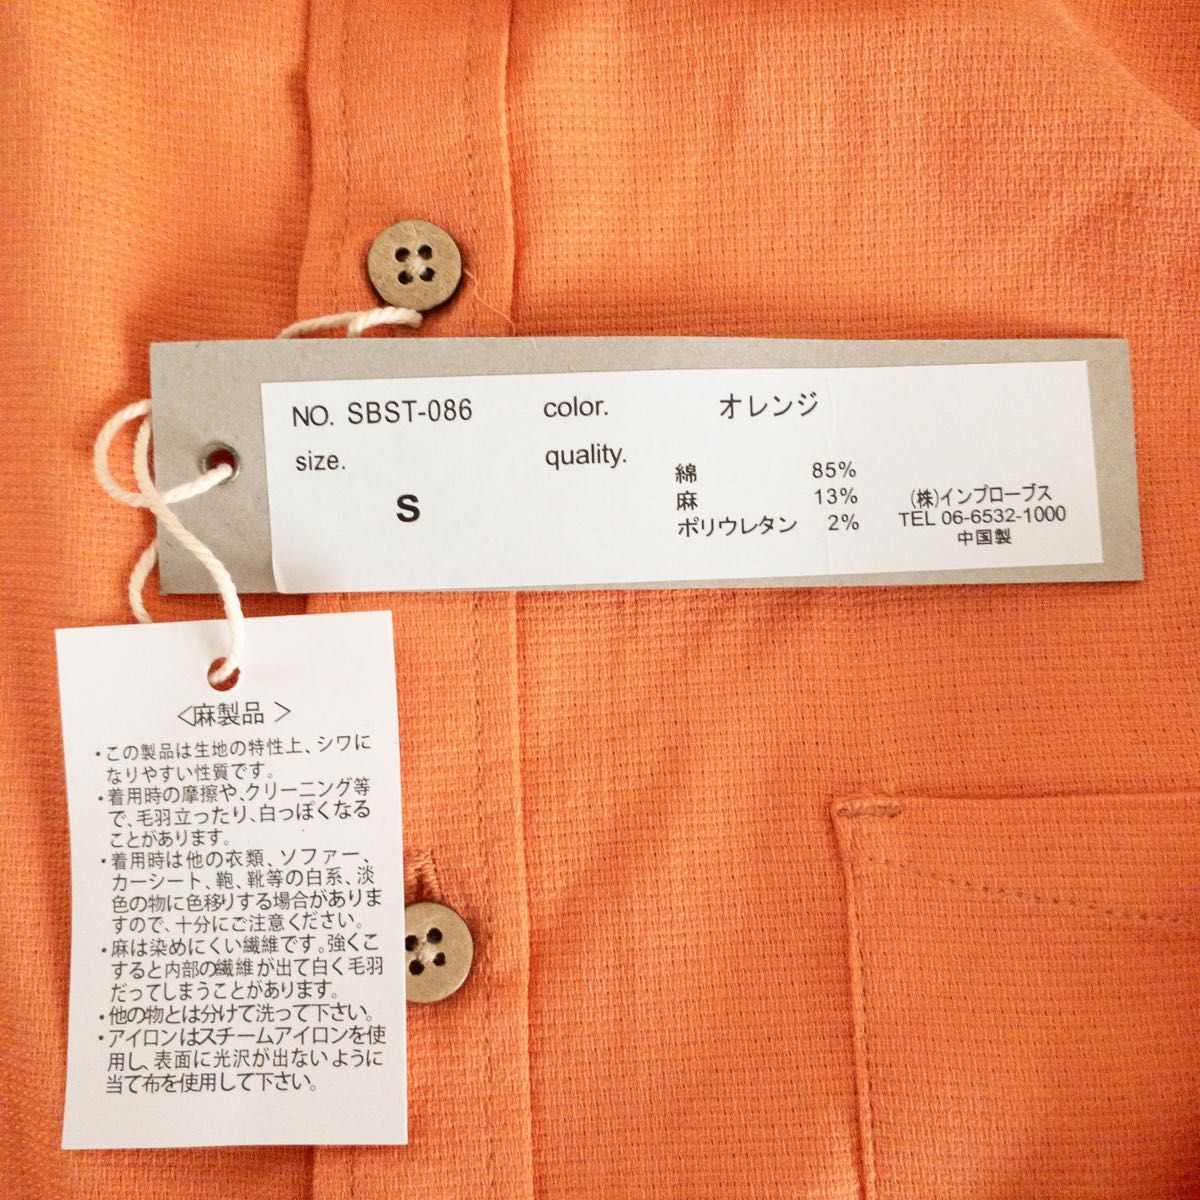 【新品未使用】imp インプローブス メンズ 長袖シャツ 無地 オレンジ S シャツ コットン